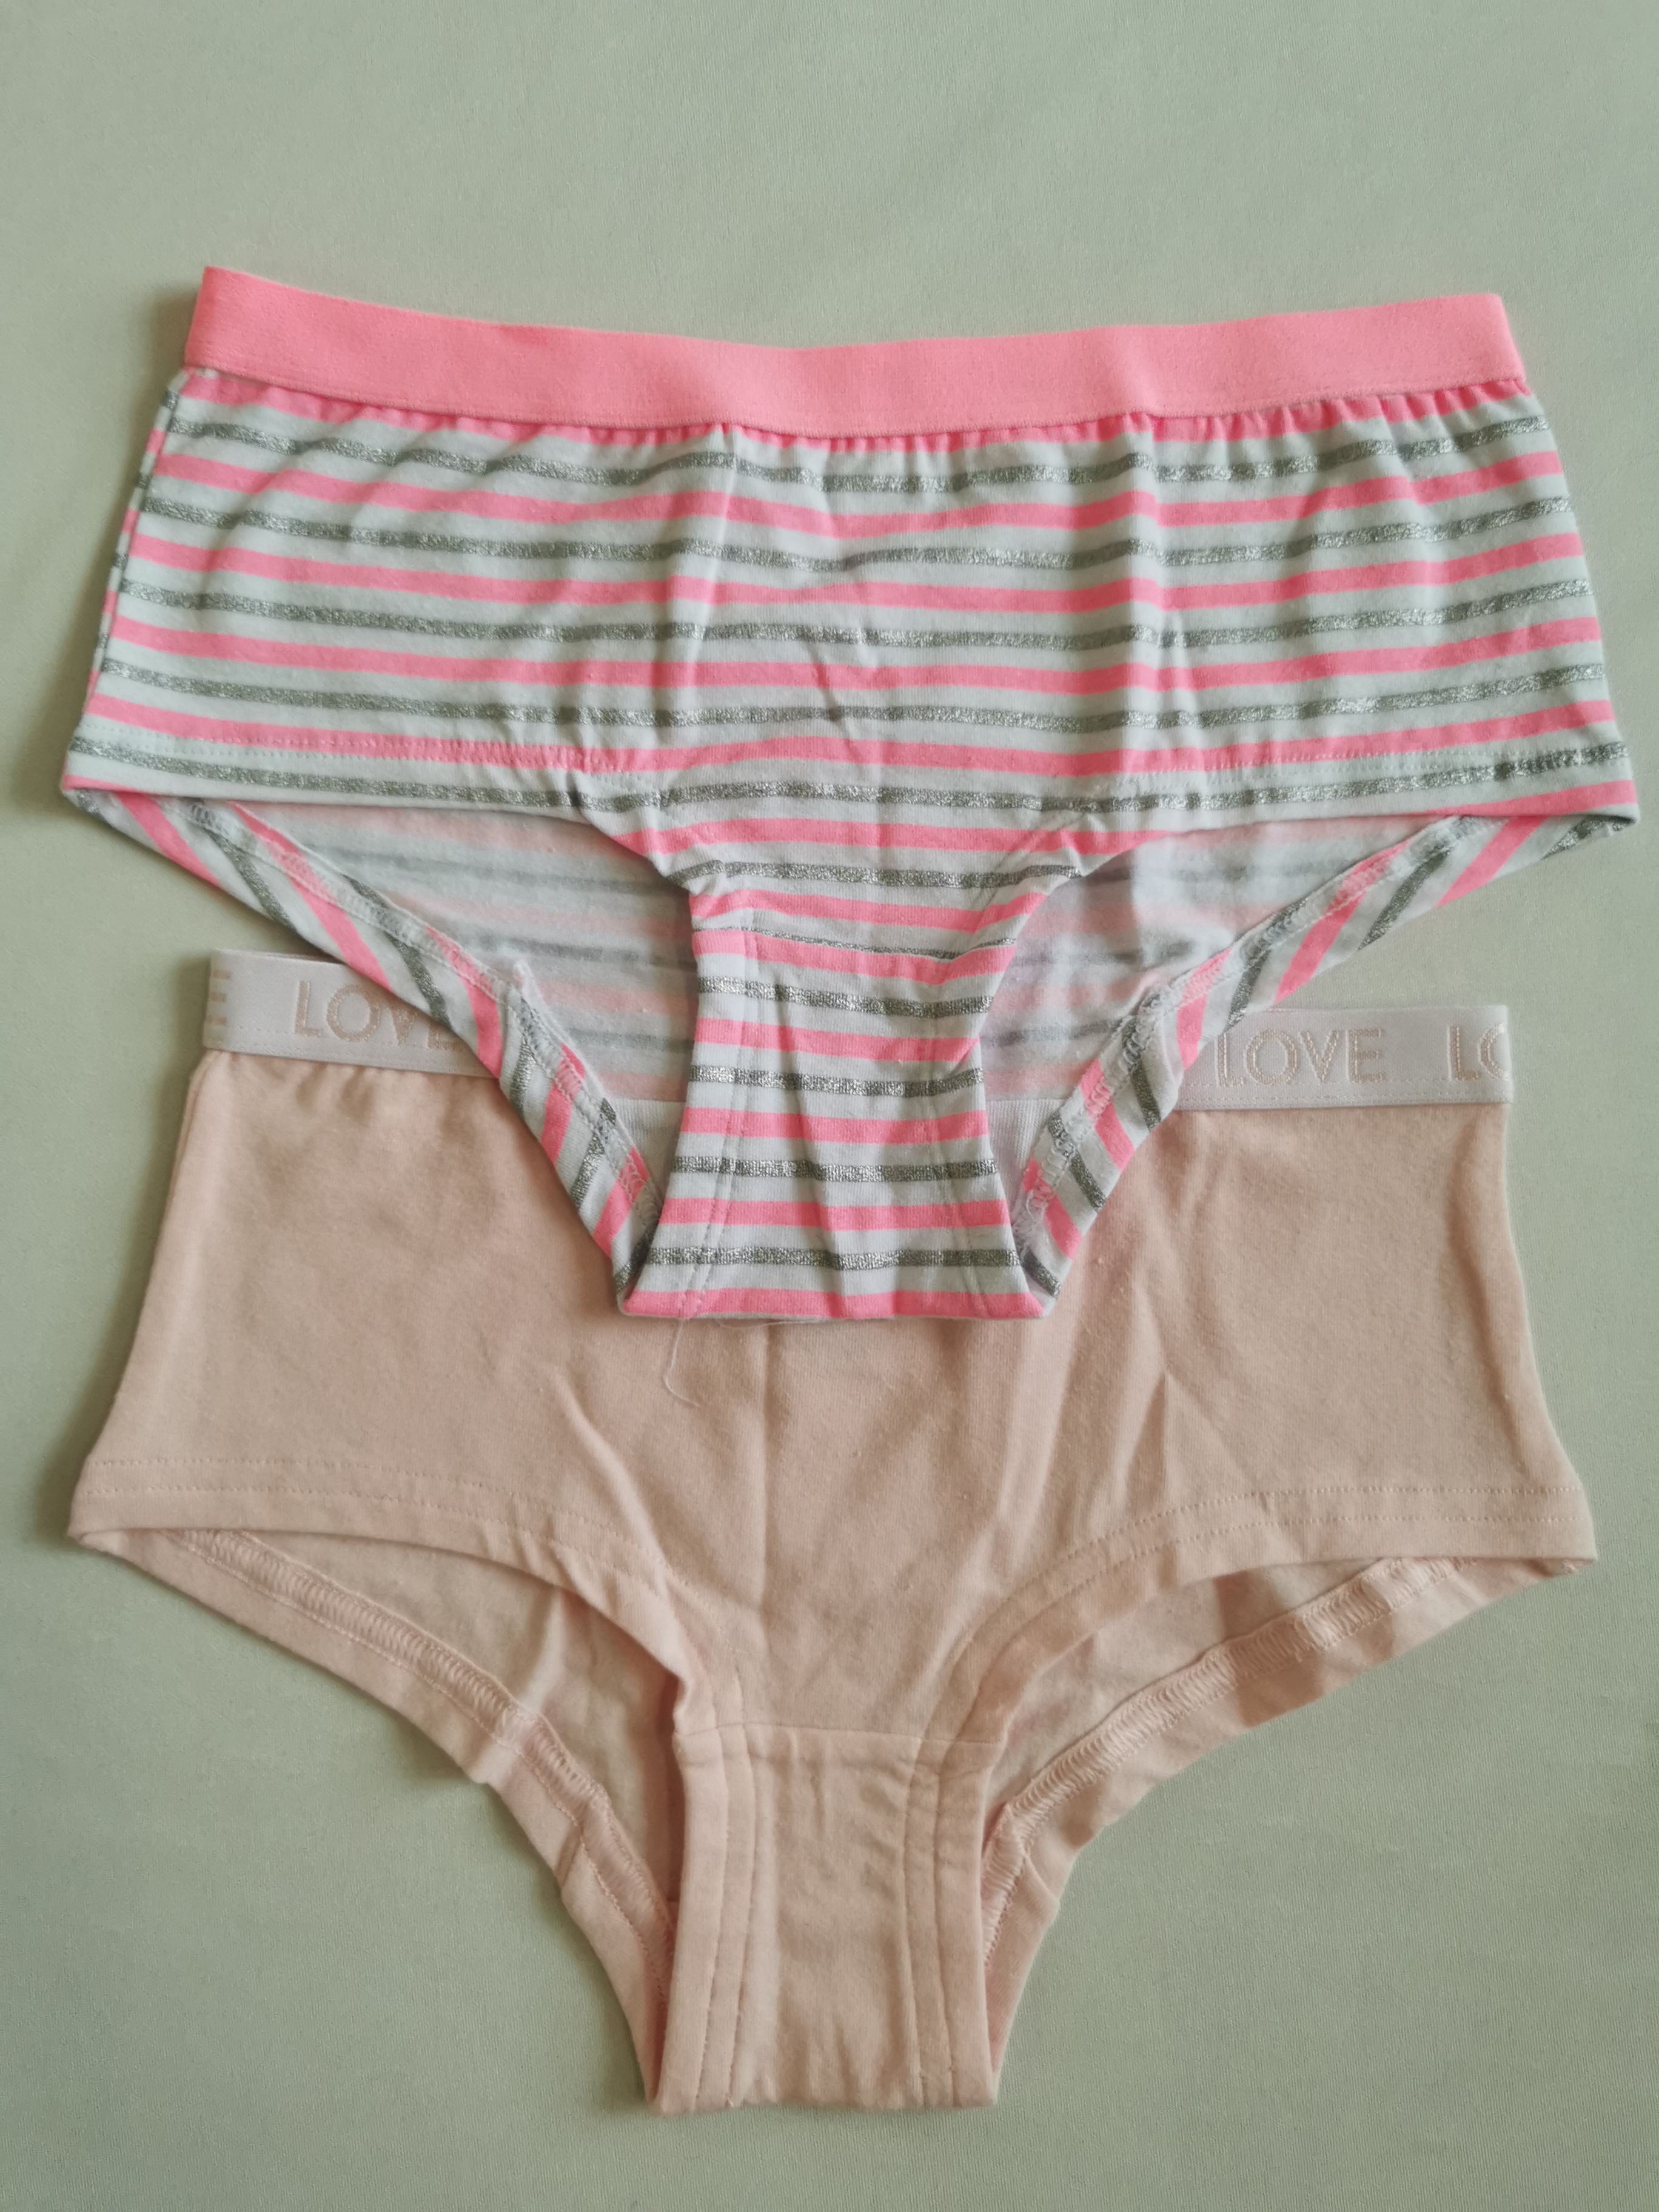 Ladies' brief women's panties bikini cotton spandex printed solid hot selling 